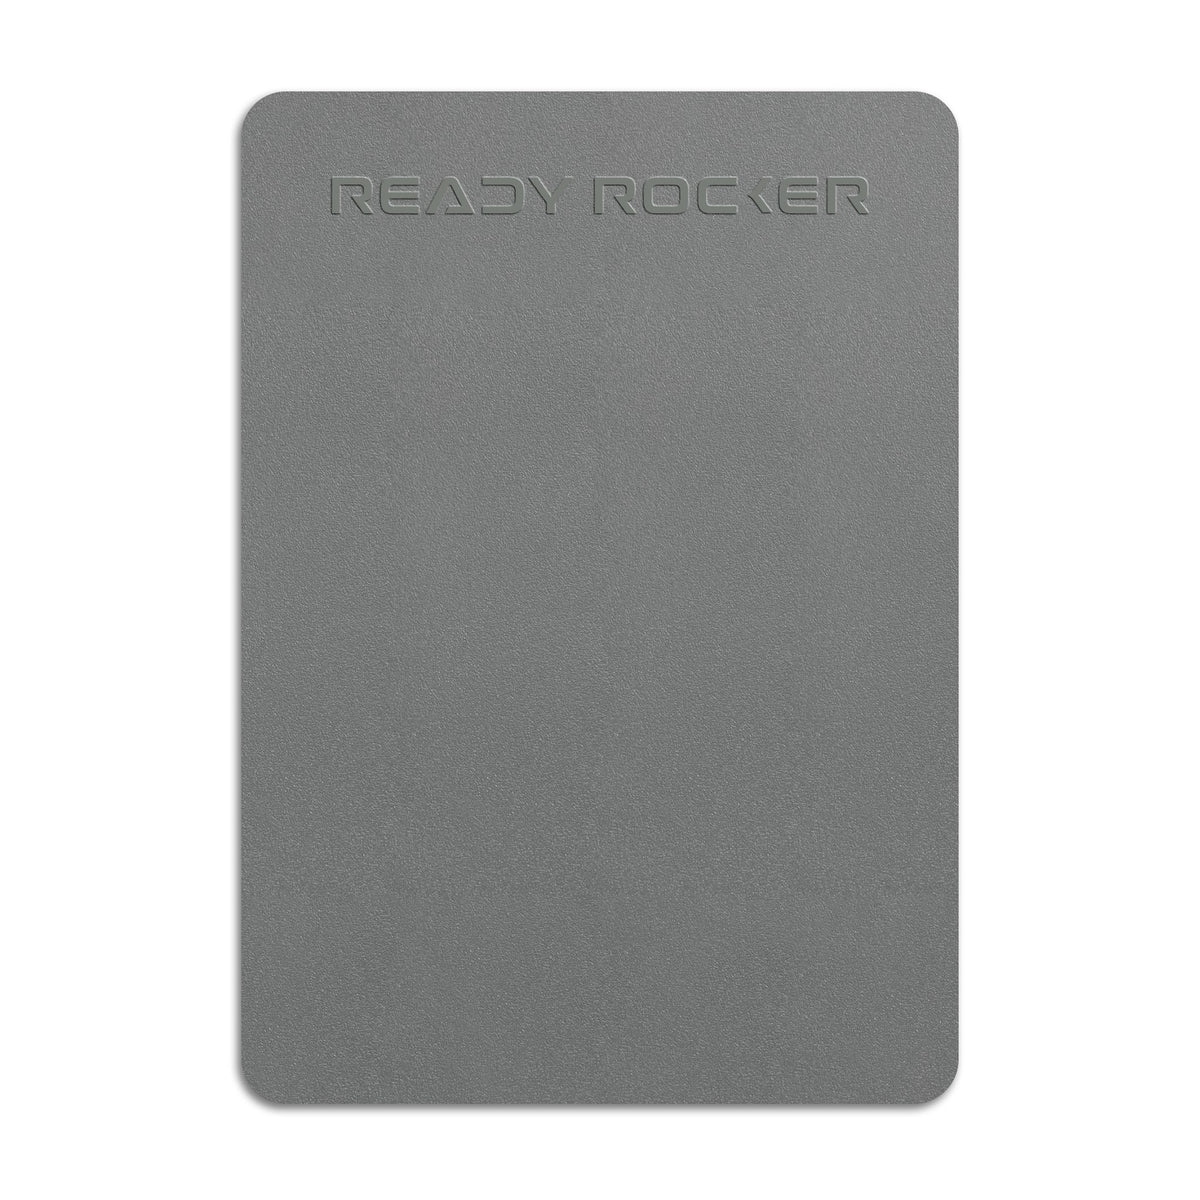 Back Pain – Ready Rocker